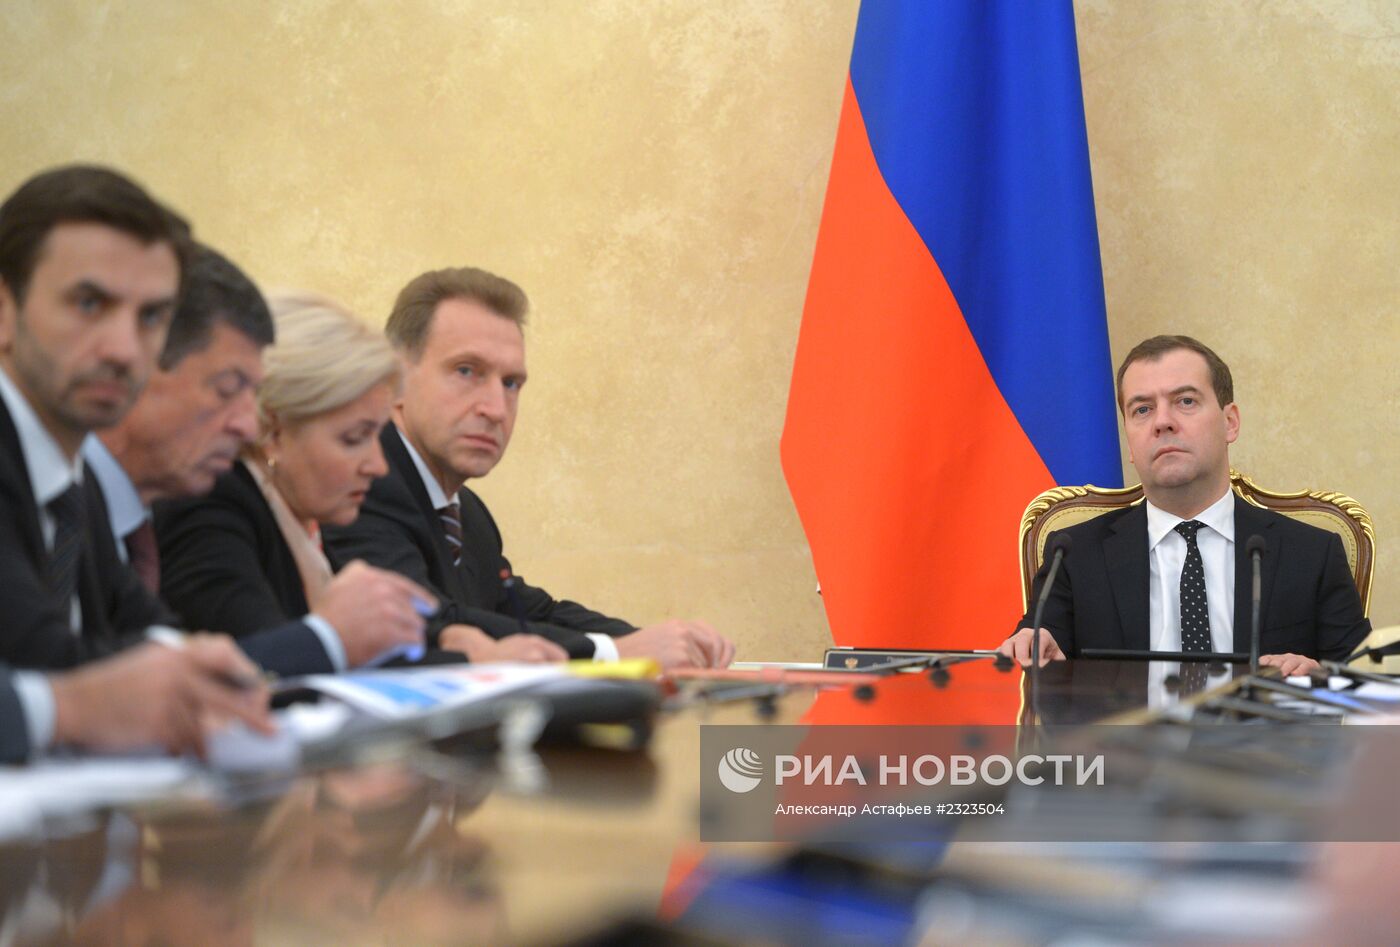 Д.Медведев провел заседание президиума правительства России